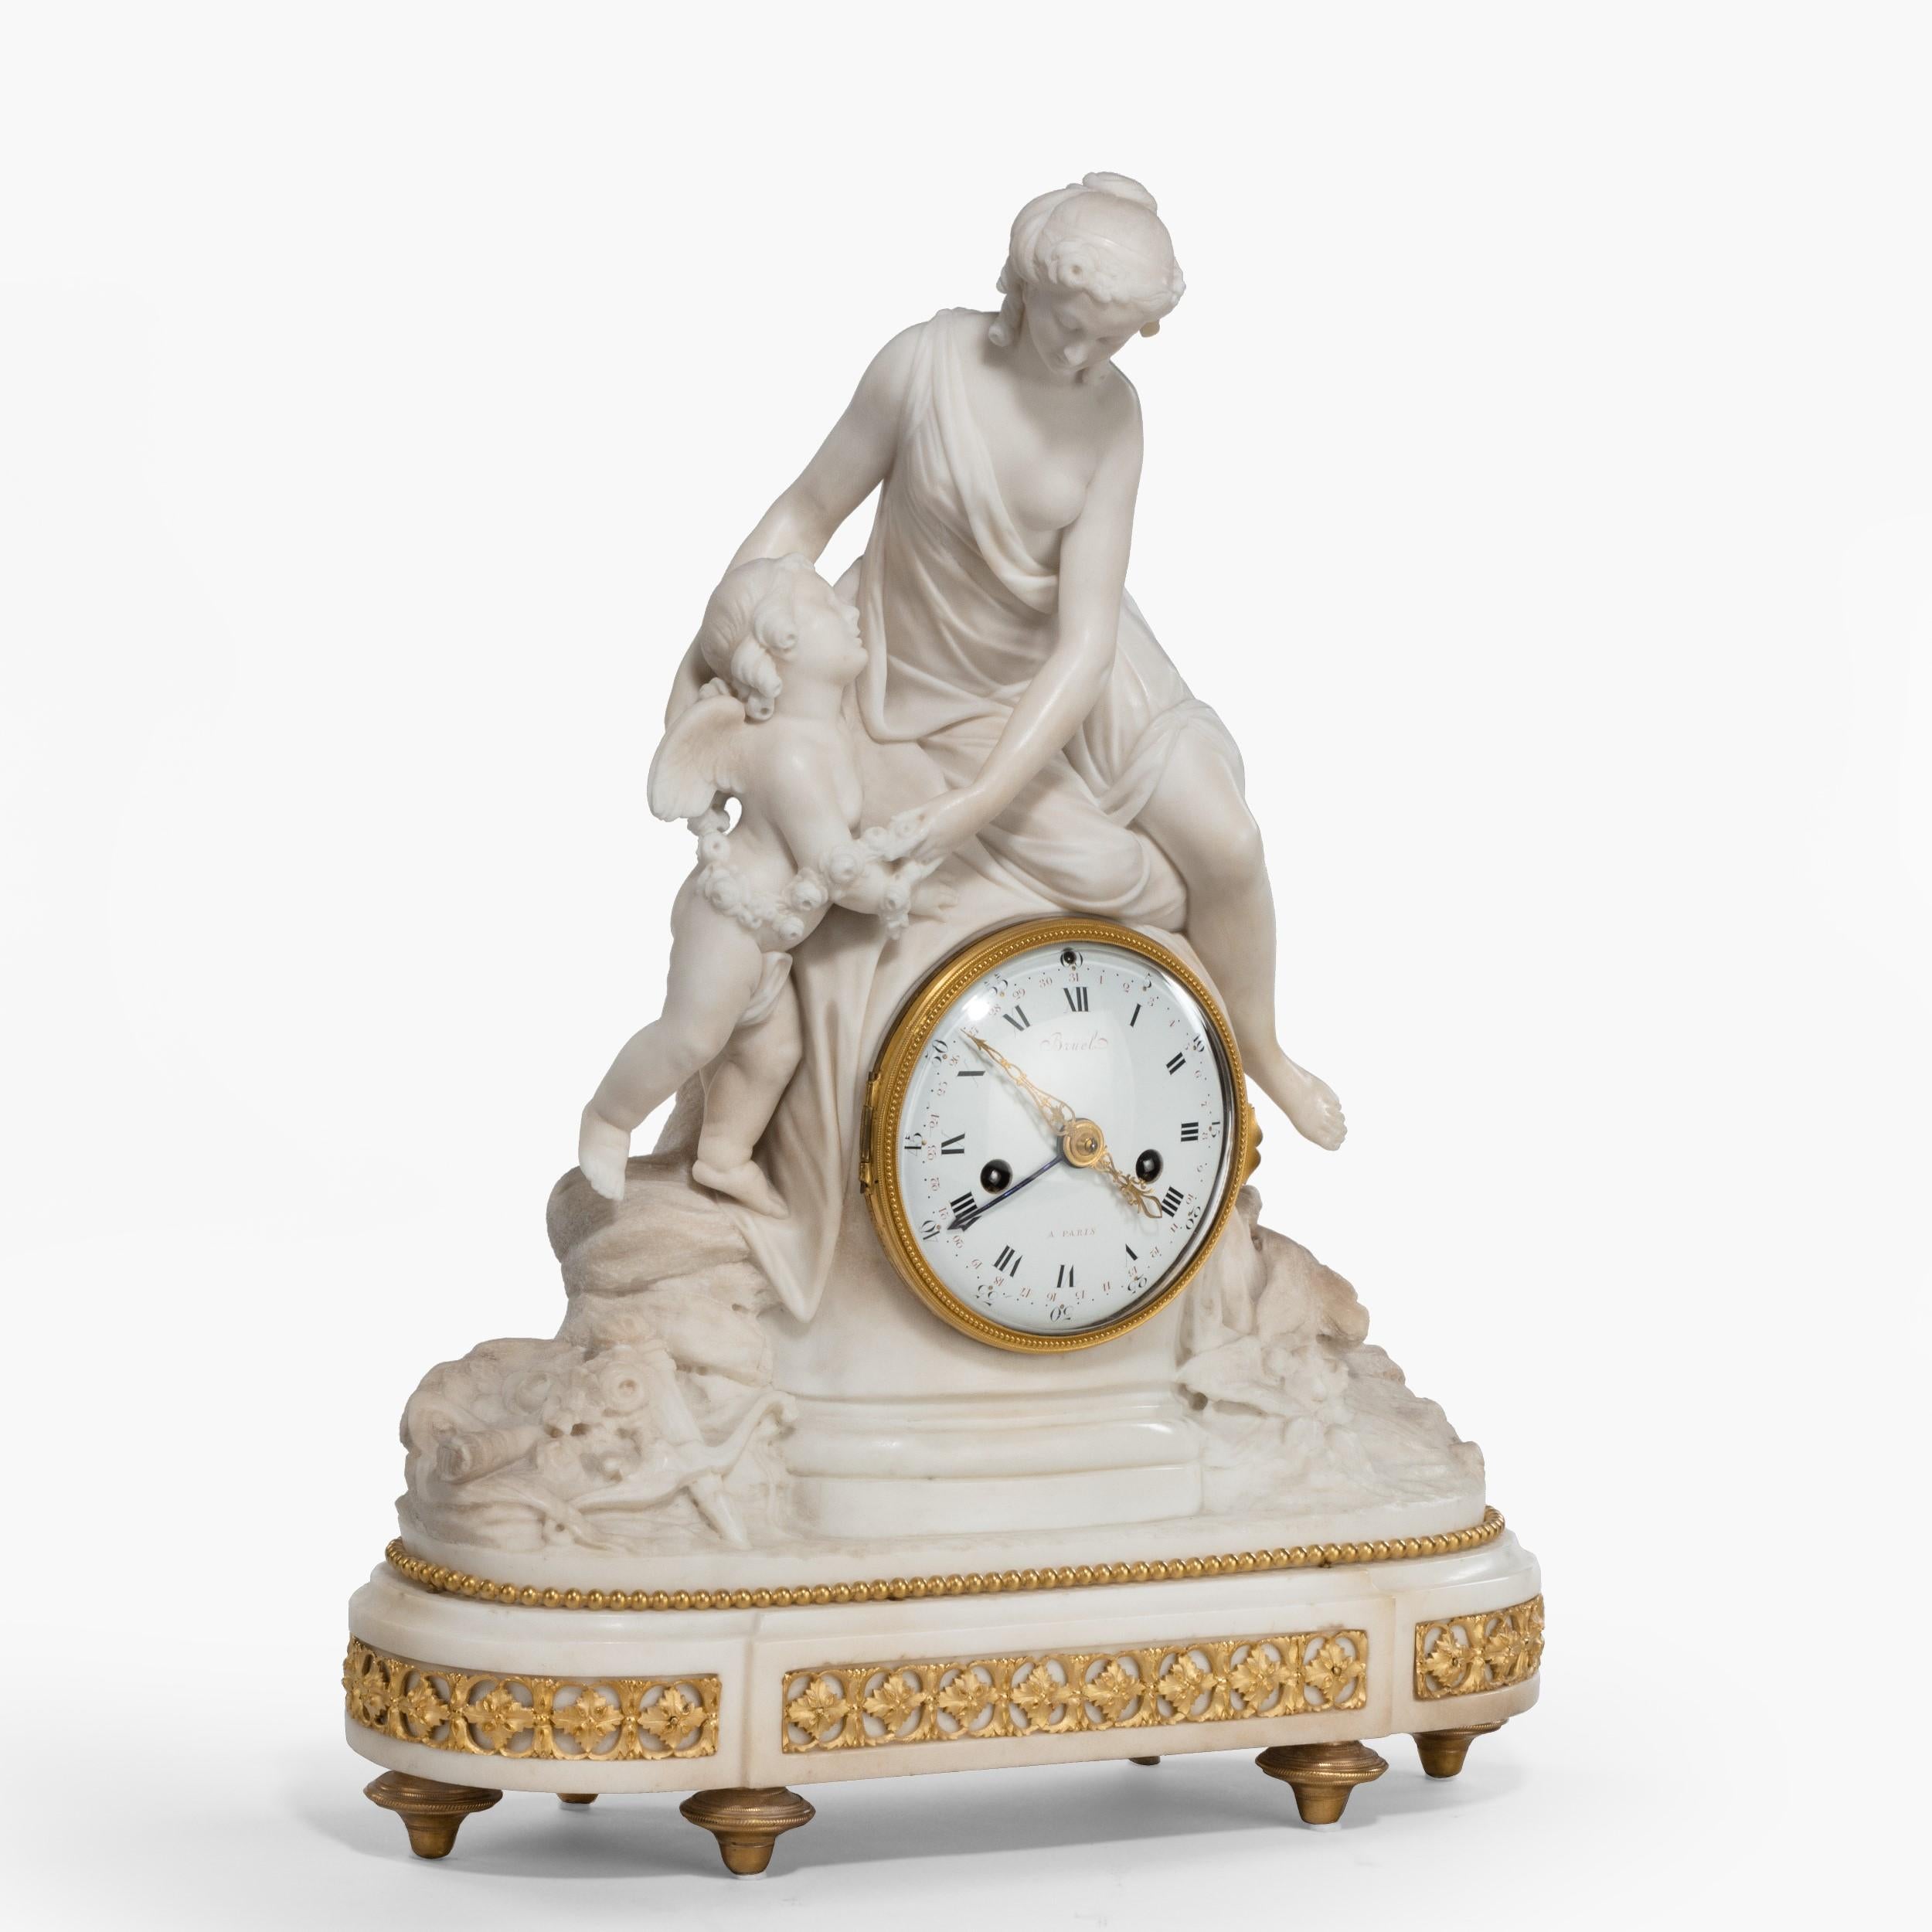 Eine Kaminuhr aus der Zeit Ludwigs XVI. von Bruel aus Paris

Auf einem elliptischen Sockel aus Carrara-Marmor und Ormolu, der von Bronzefüßen getragen wird, ruhen die Figuren von Psyche und Amor auf einem Rocaille-Grund, der das Uhrwerk mit acht